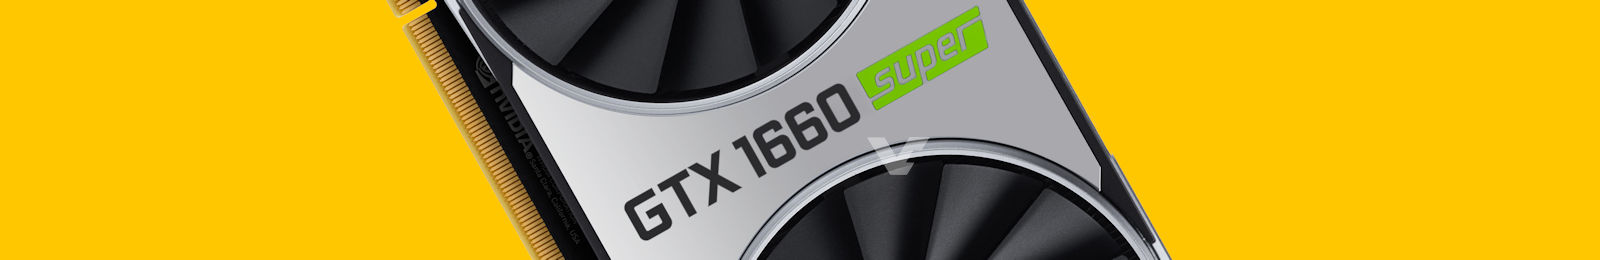 NVIDIA chính thức ra mắt Geforce GTX Super đầu tiên GTX 1660